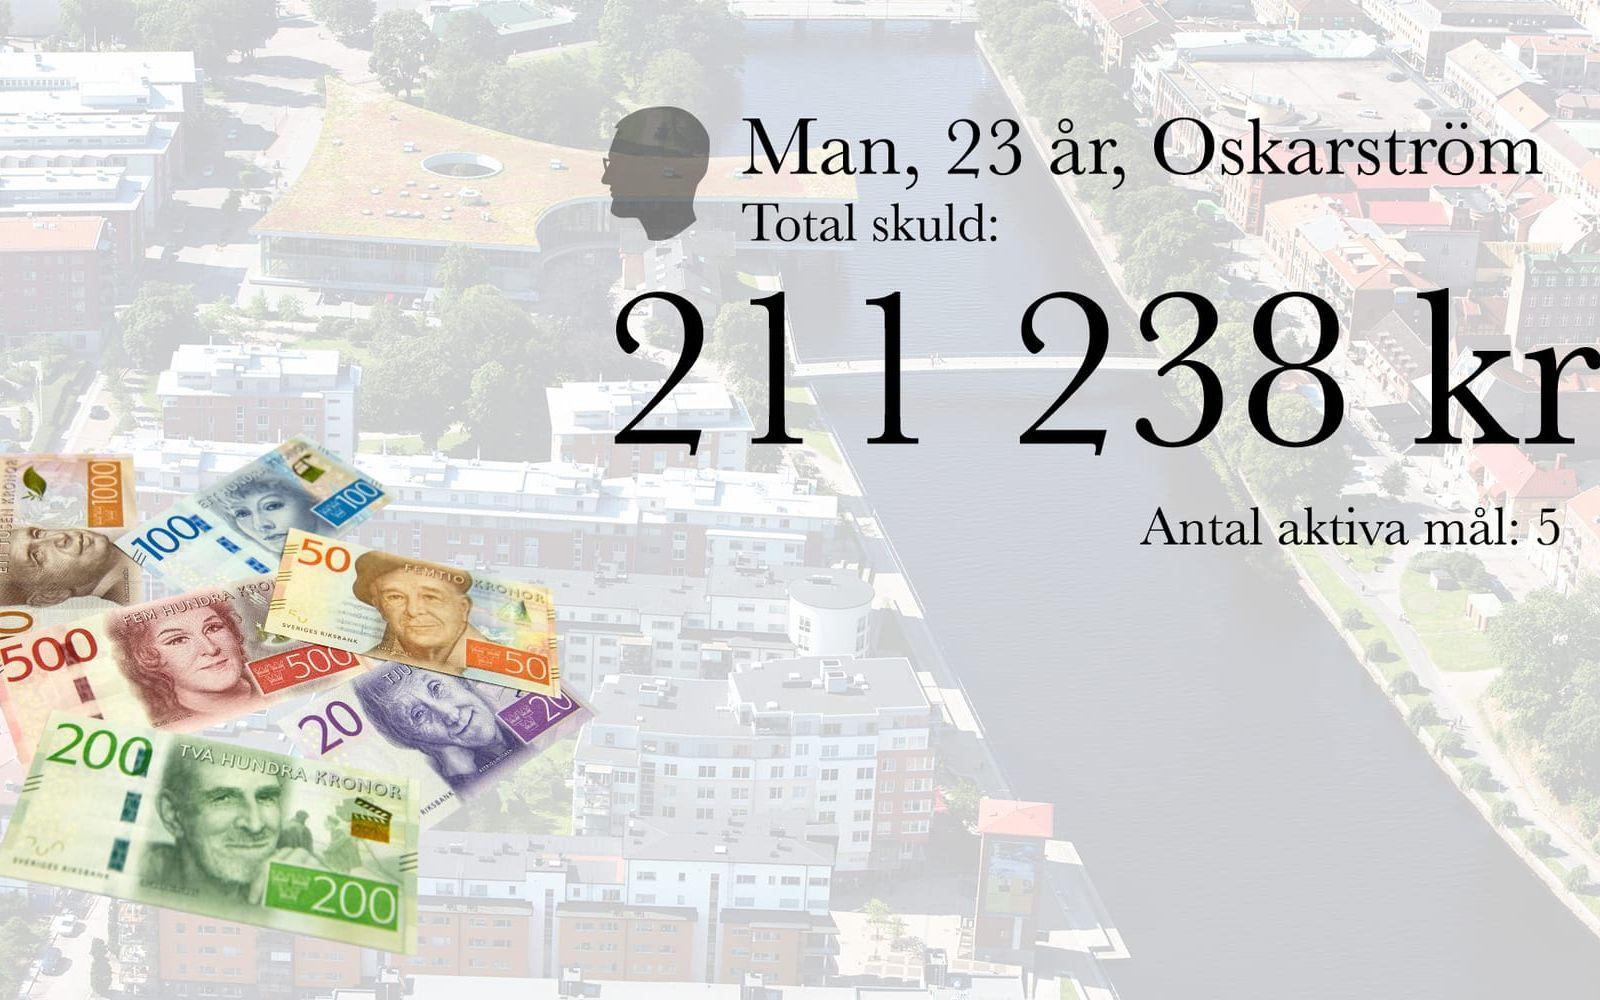 7. Man, 23 år, Oskarström. Total skuld: 211 238 kronor. Antal aktiva mål: 5.
